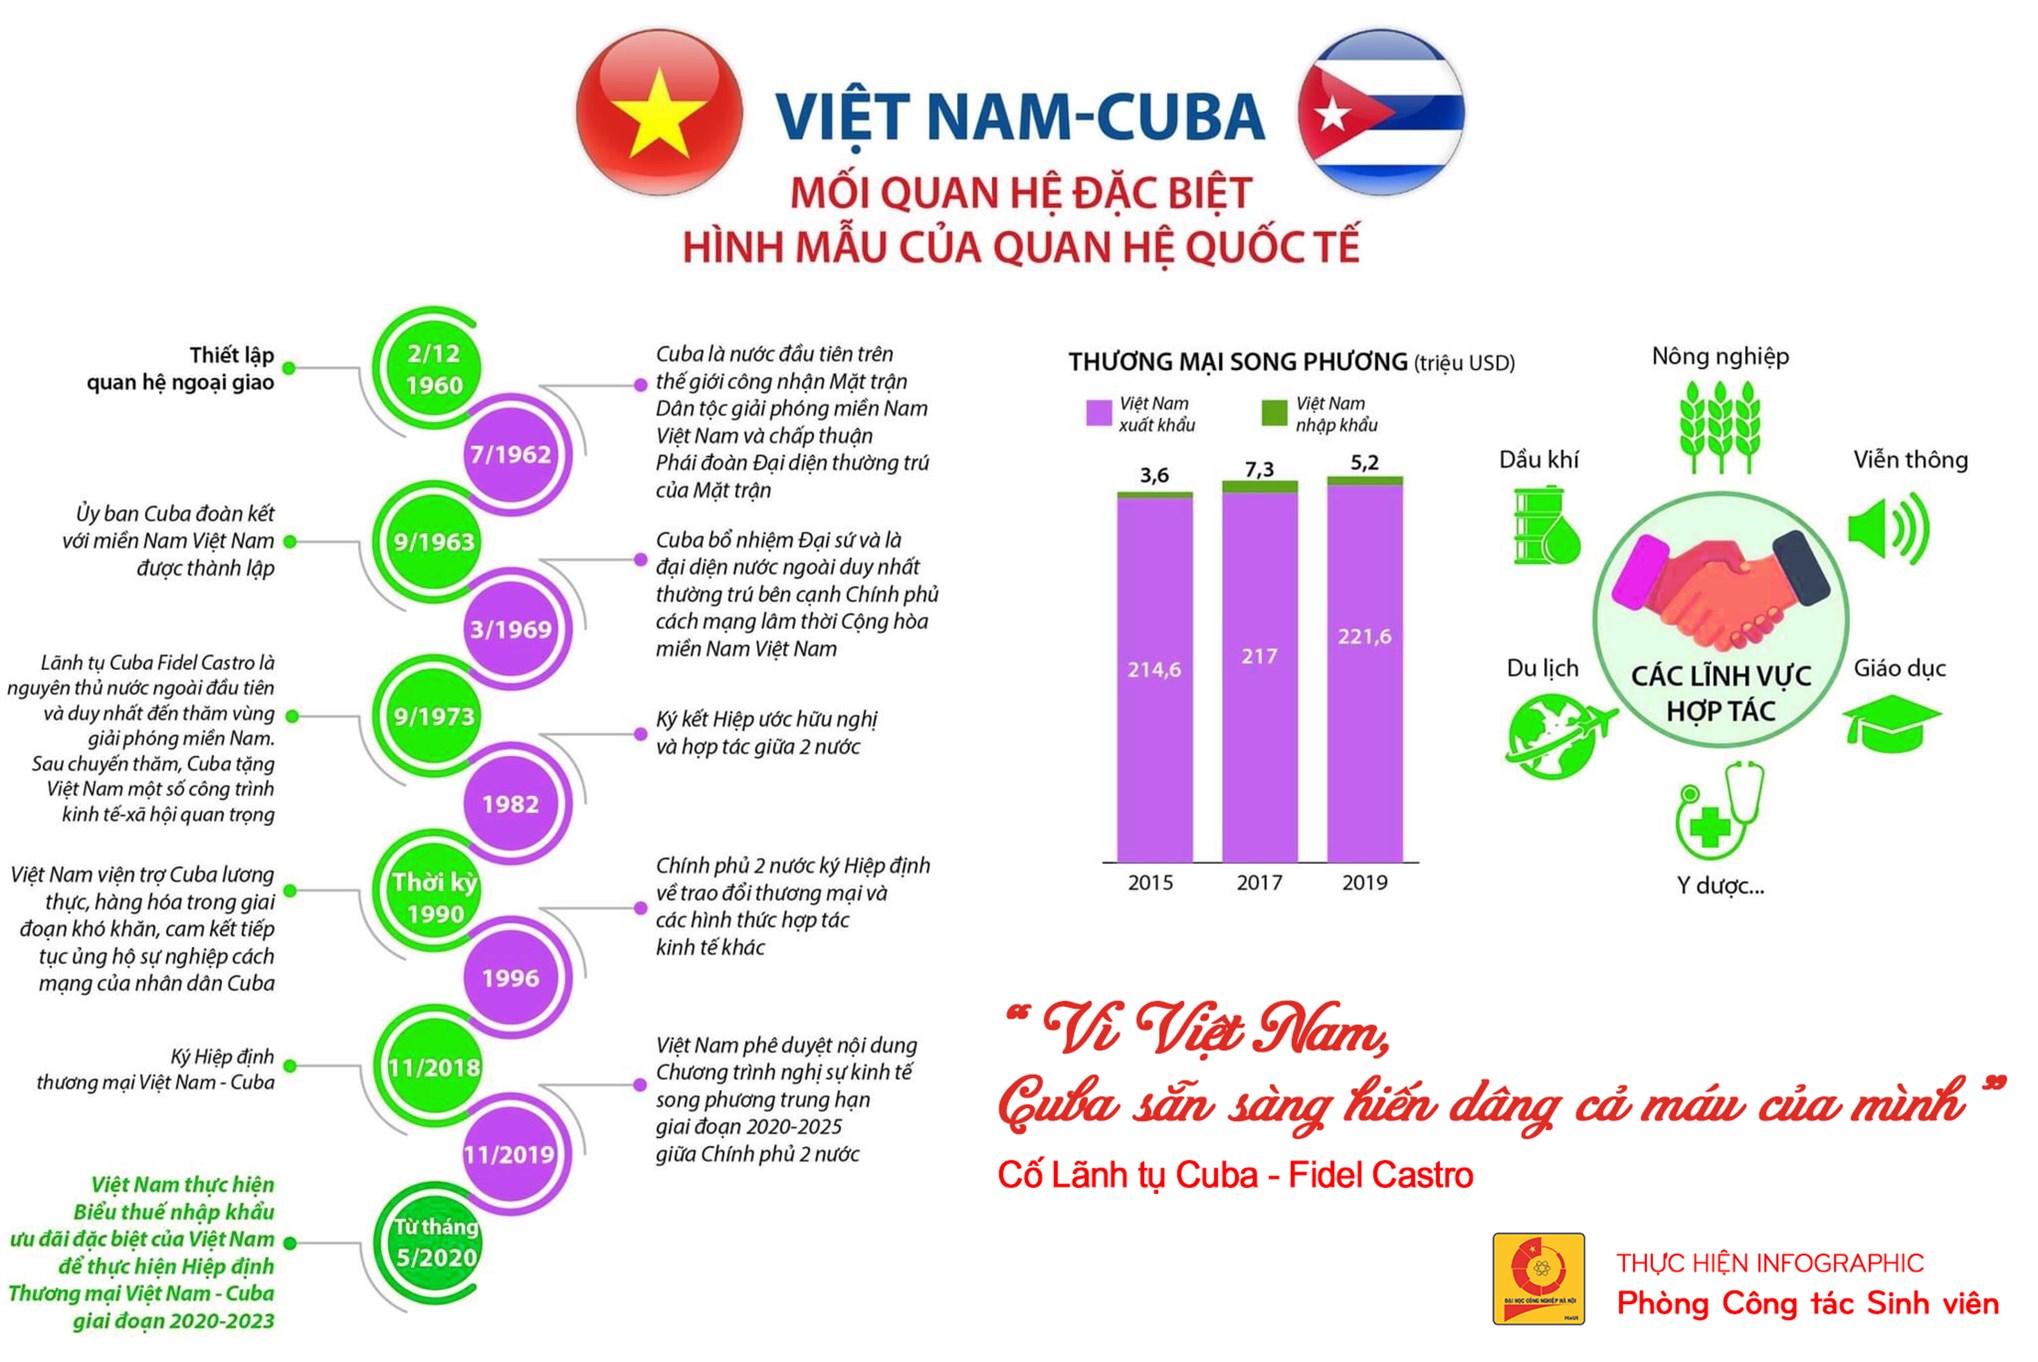 Kỷ niệm 60 năm Ngày thiết lập quan hệ ngoại giao Việt Nam - Cuba: Mối quan hệ đặc biệt, hình mẫu của quan hệ quốc tế